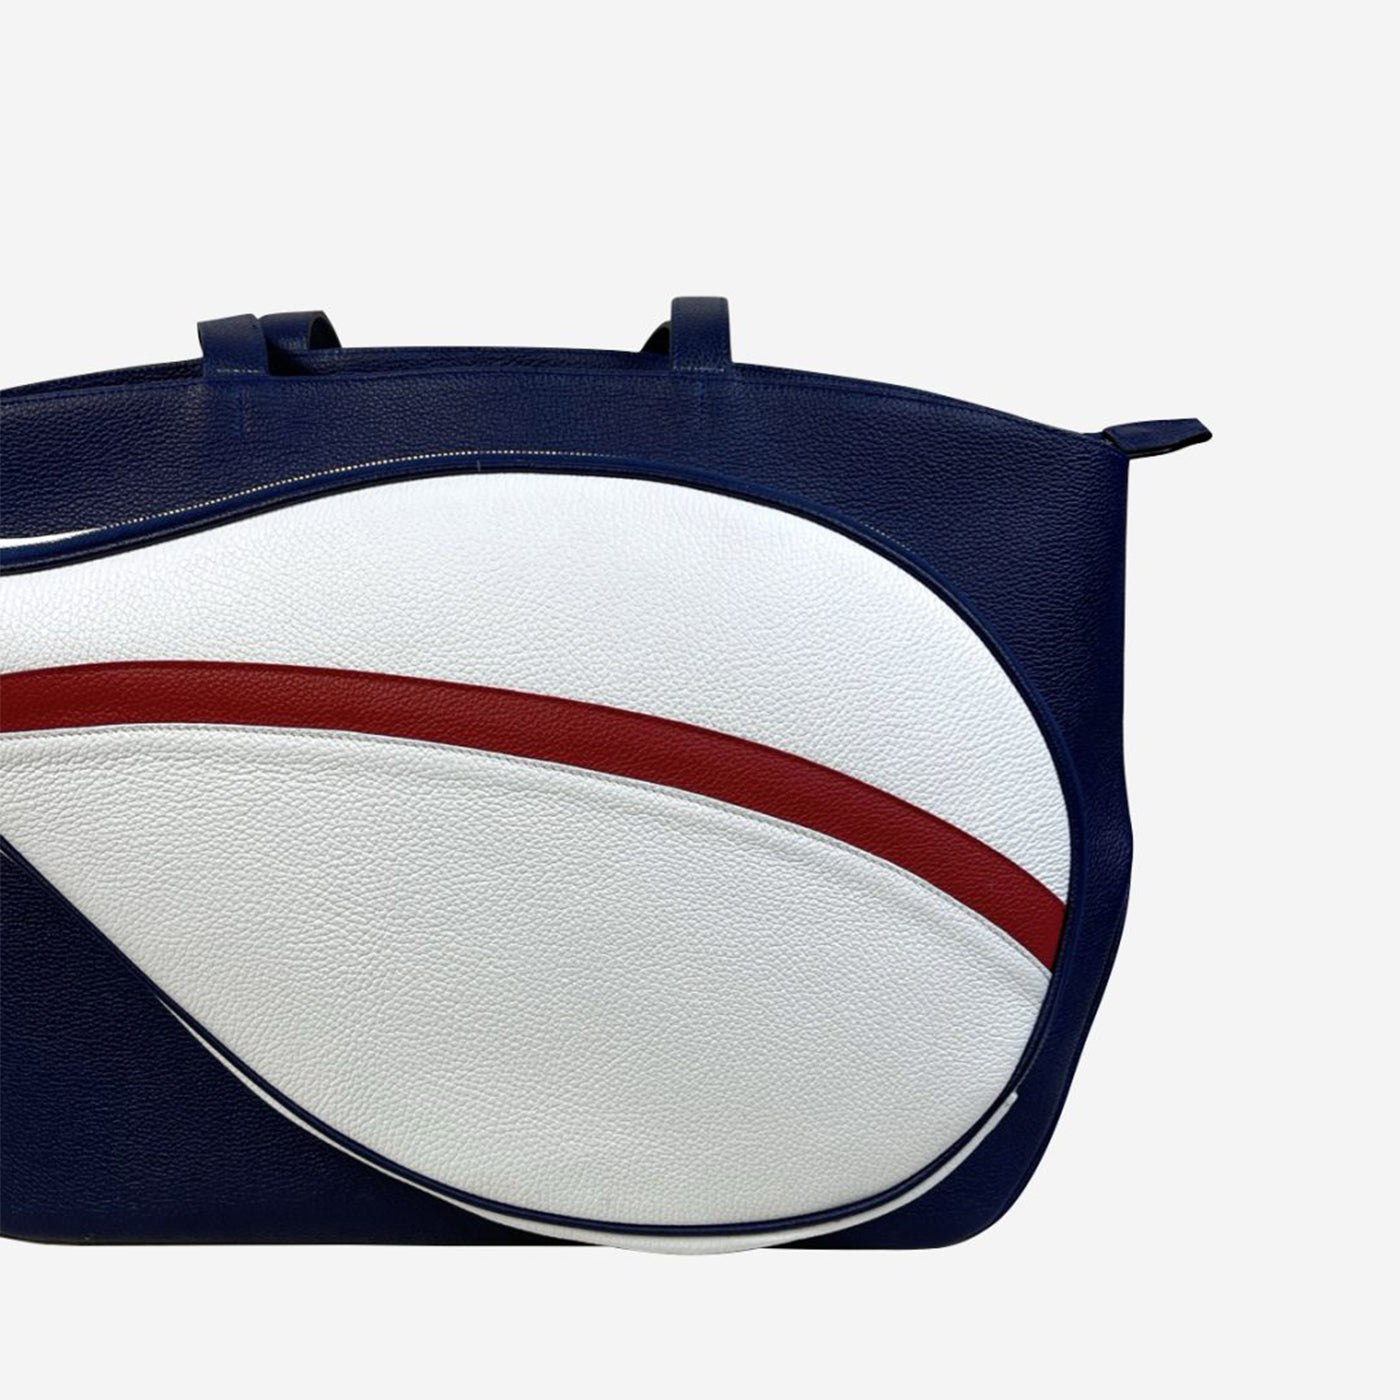 Sac de sport bleu/rouge/blanc avec pochette en forme de raquette de tennis - Vue alternative 1